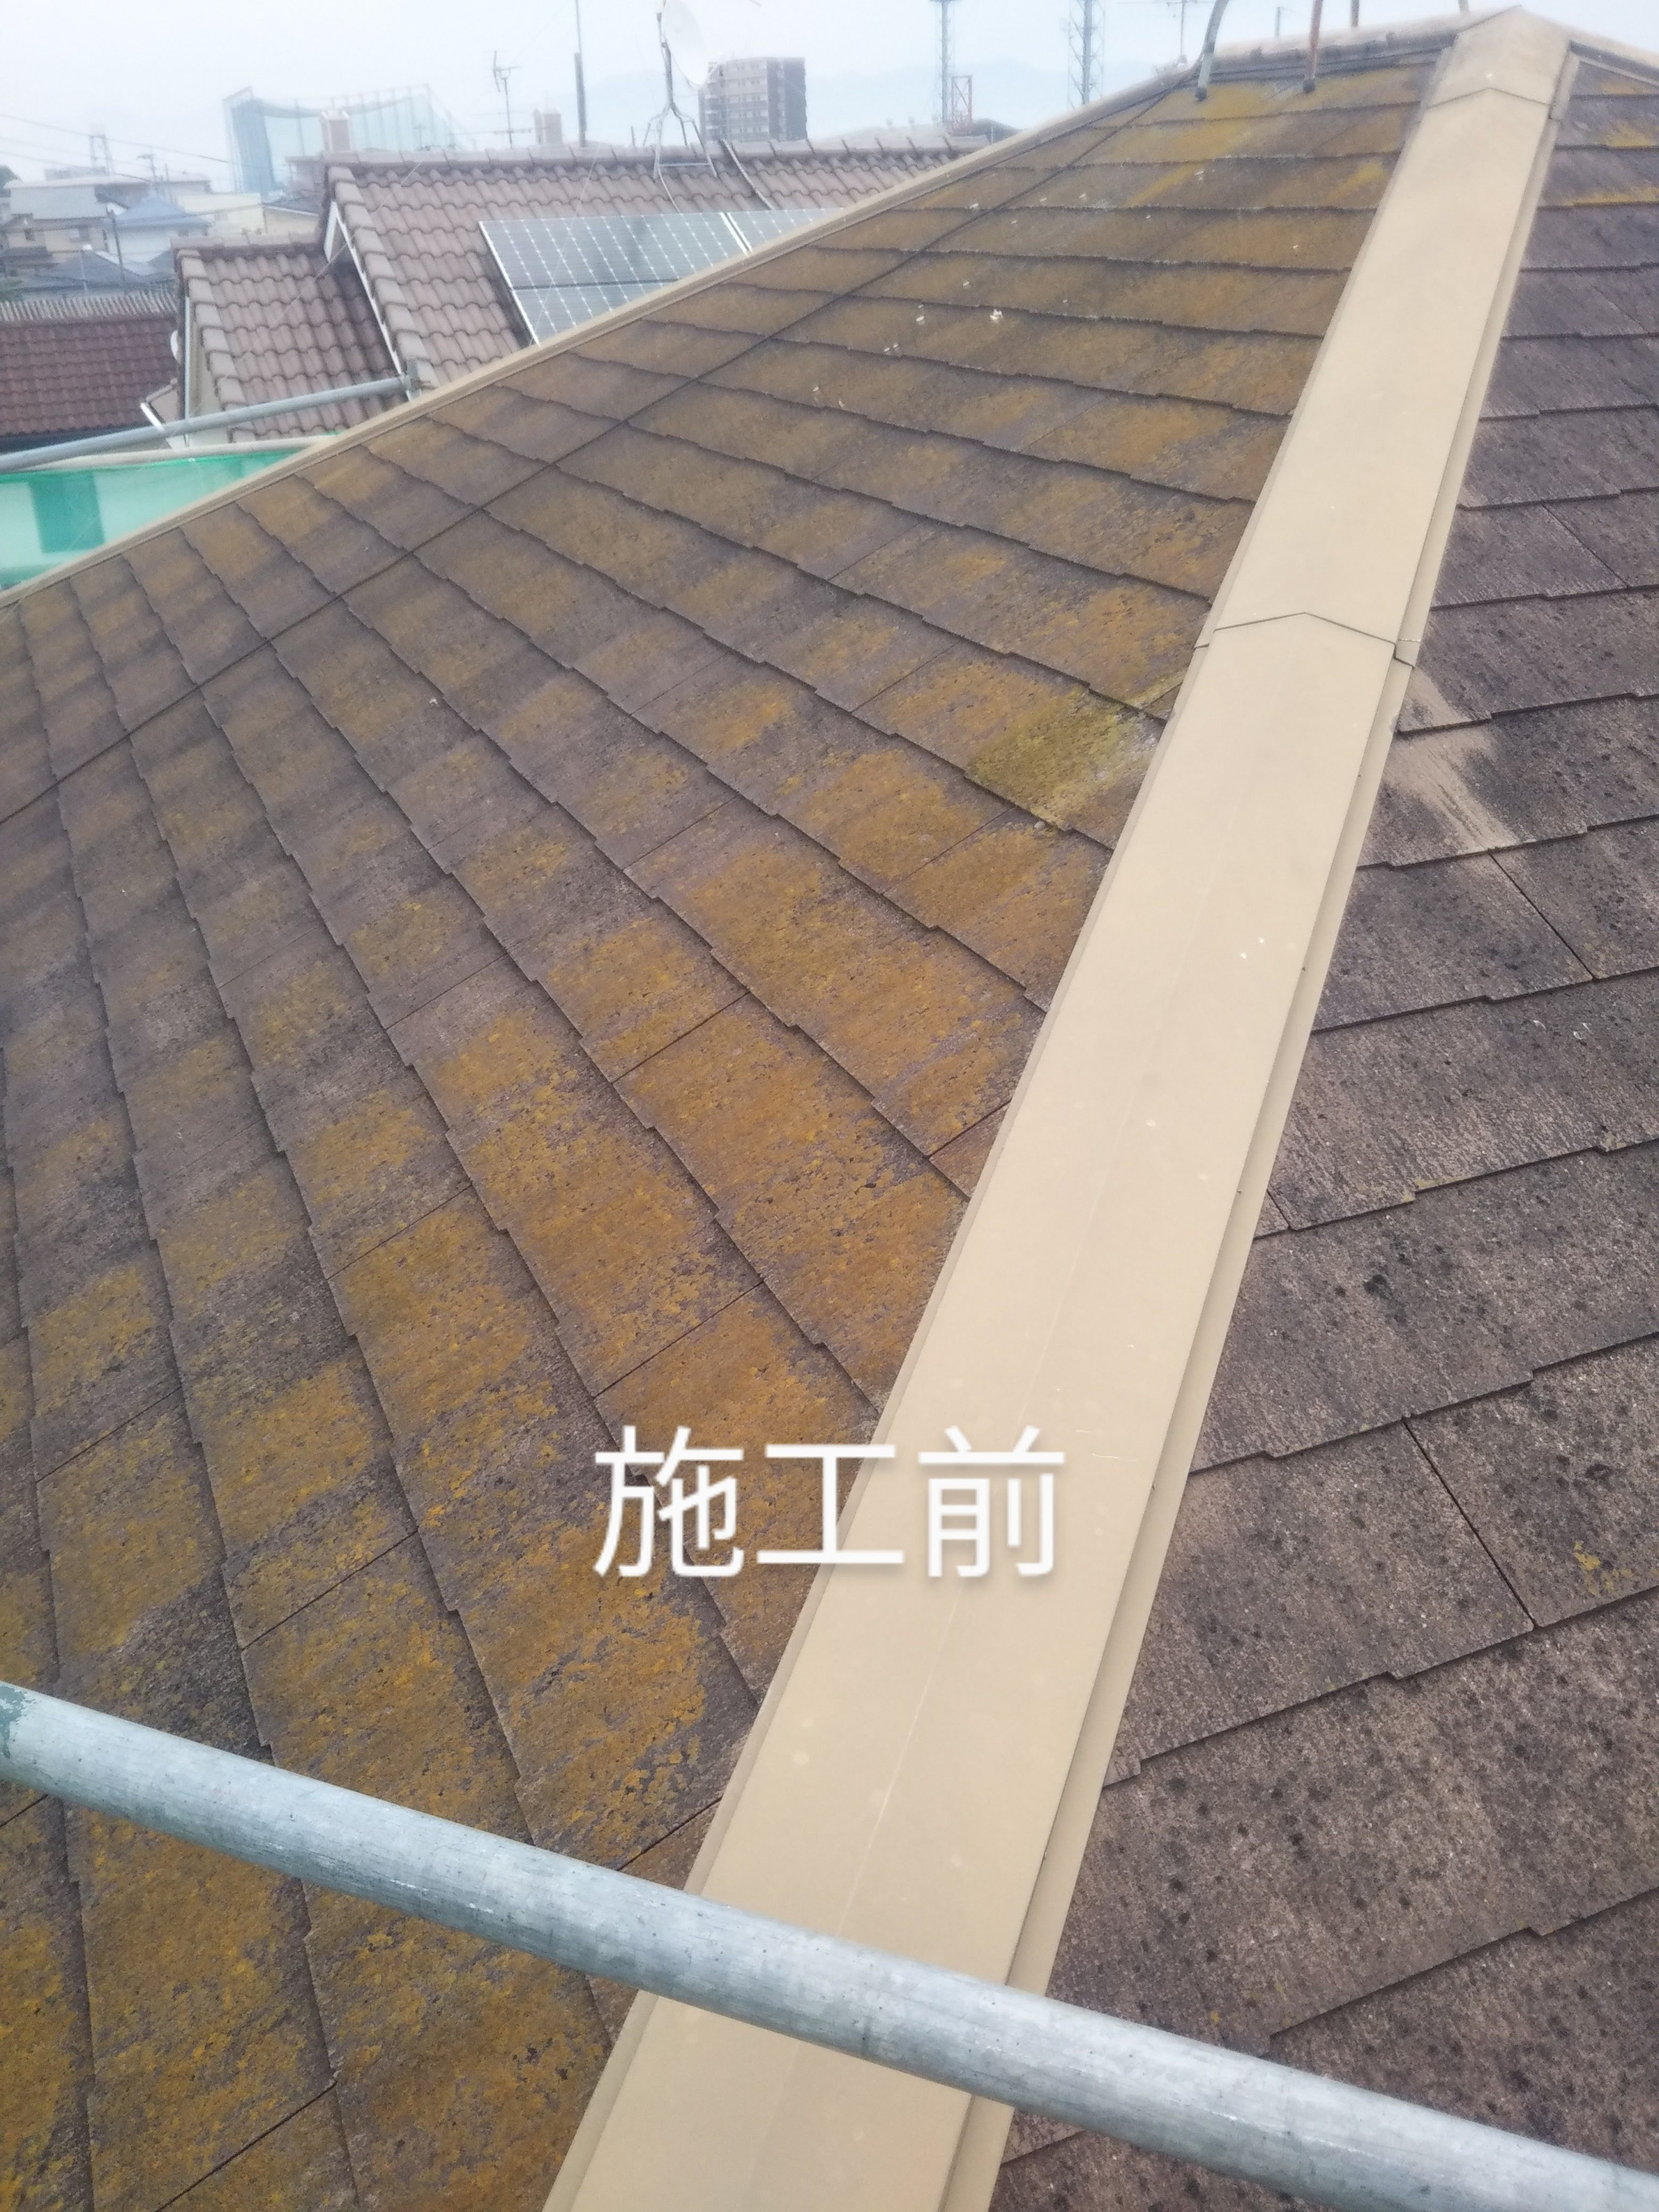 あなたのお家の屋根はこんなになっていませんか？屋根は特に傷みが激しいので早目の対策で雨漏れからお家を守りましょう！